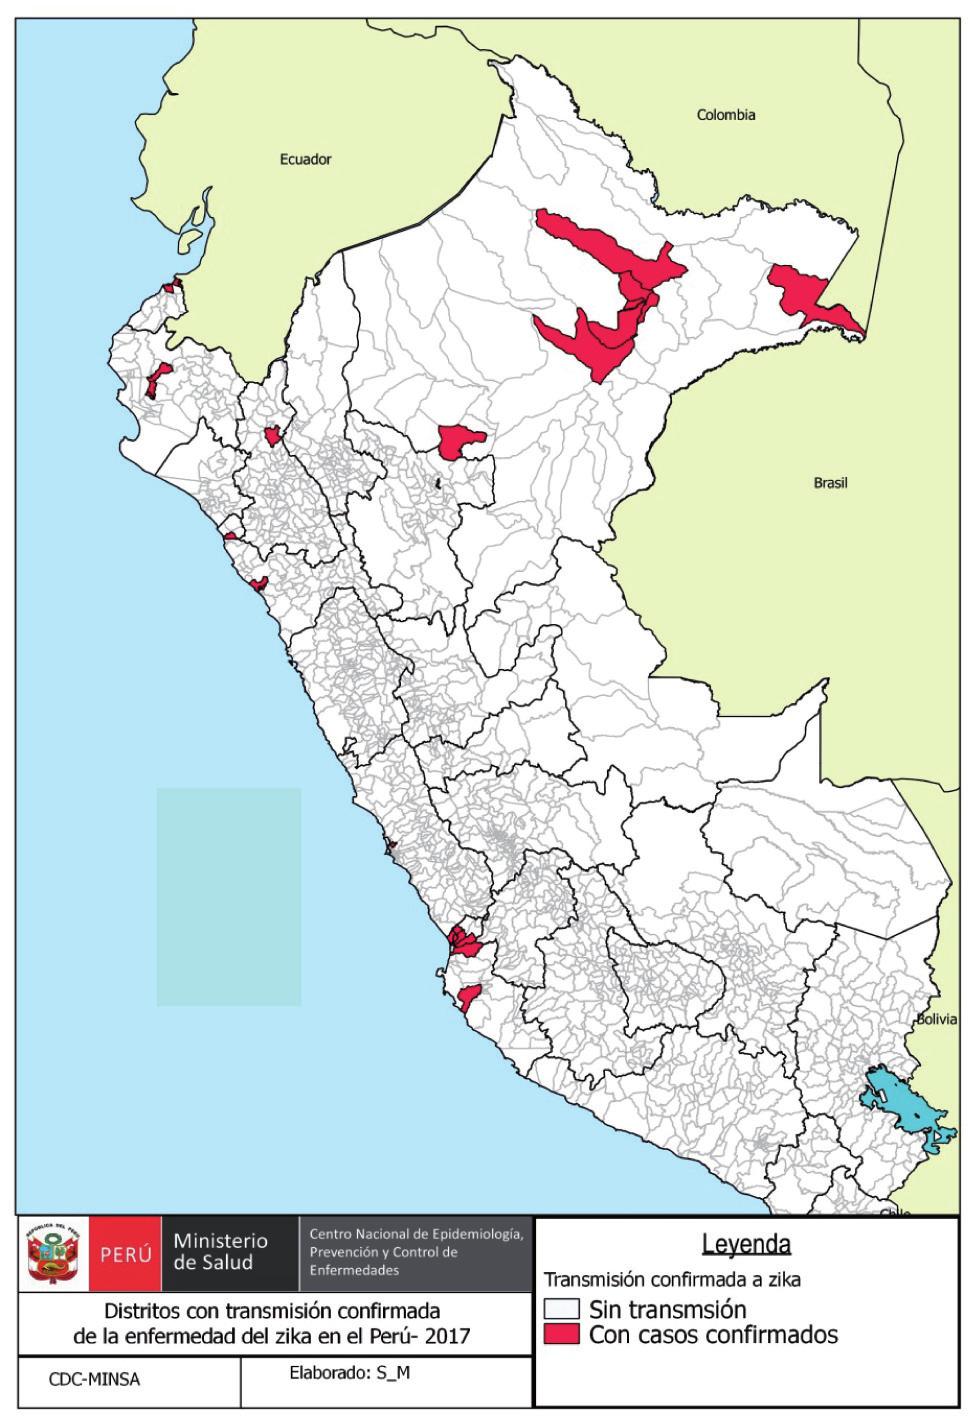 Distritos con transmisión confirmada de la enfermedad de zika, Perú 2017 SE 38 Fuente: Centro Nacional de Epidemiología, Prevención y Control de Enfermedades MINSA Situación epidemiológica de las